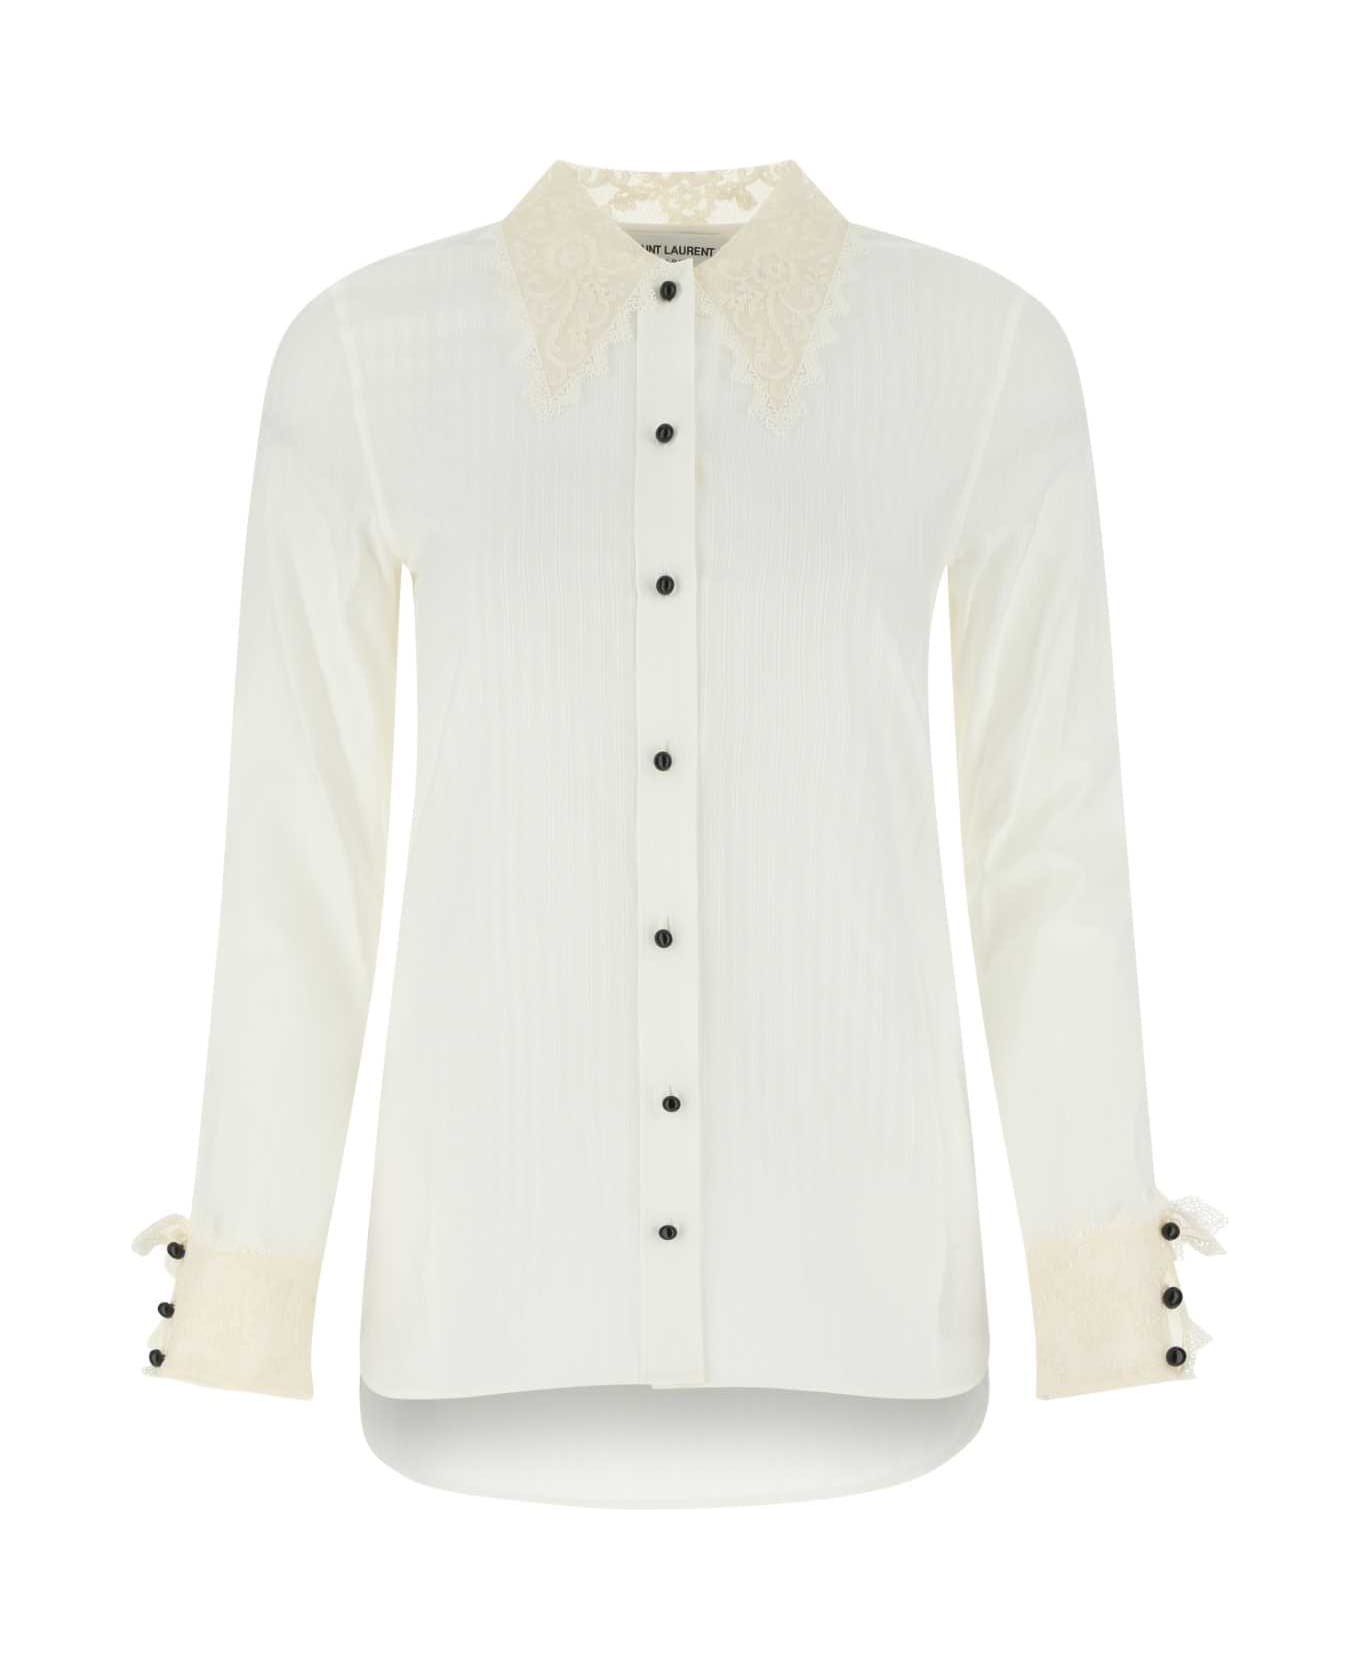 Saint Laurent White Cotton Blend Shirt - 9601